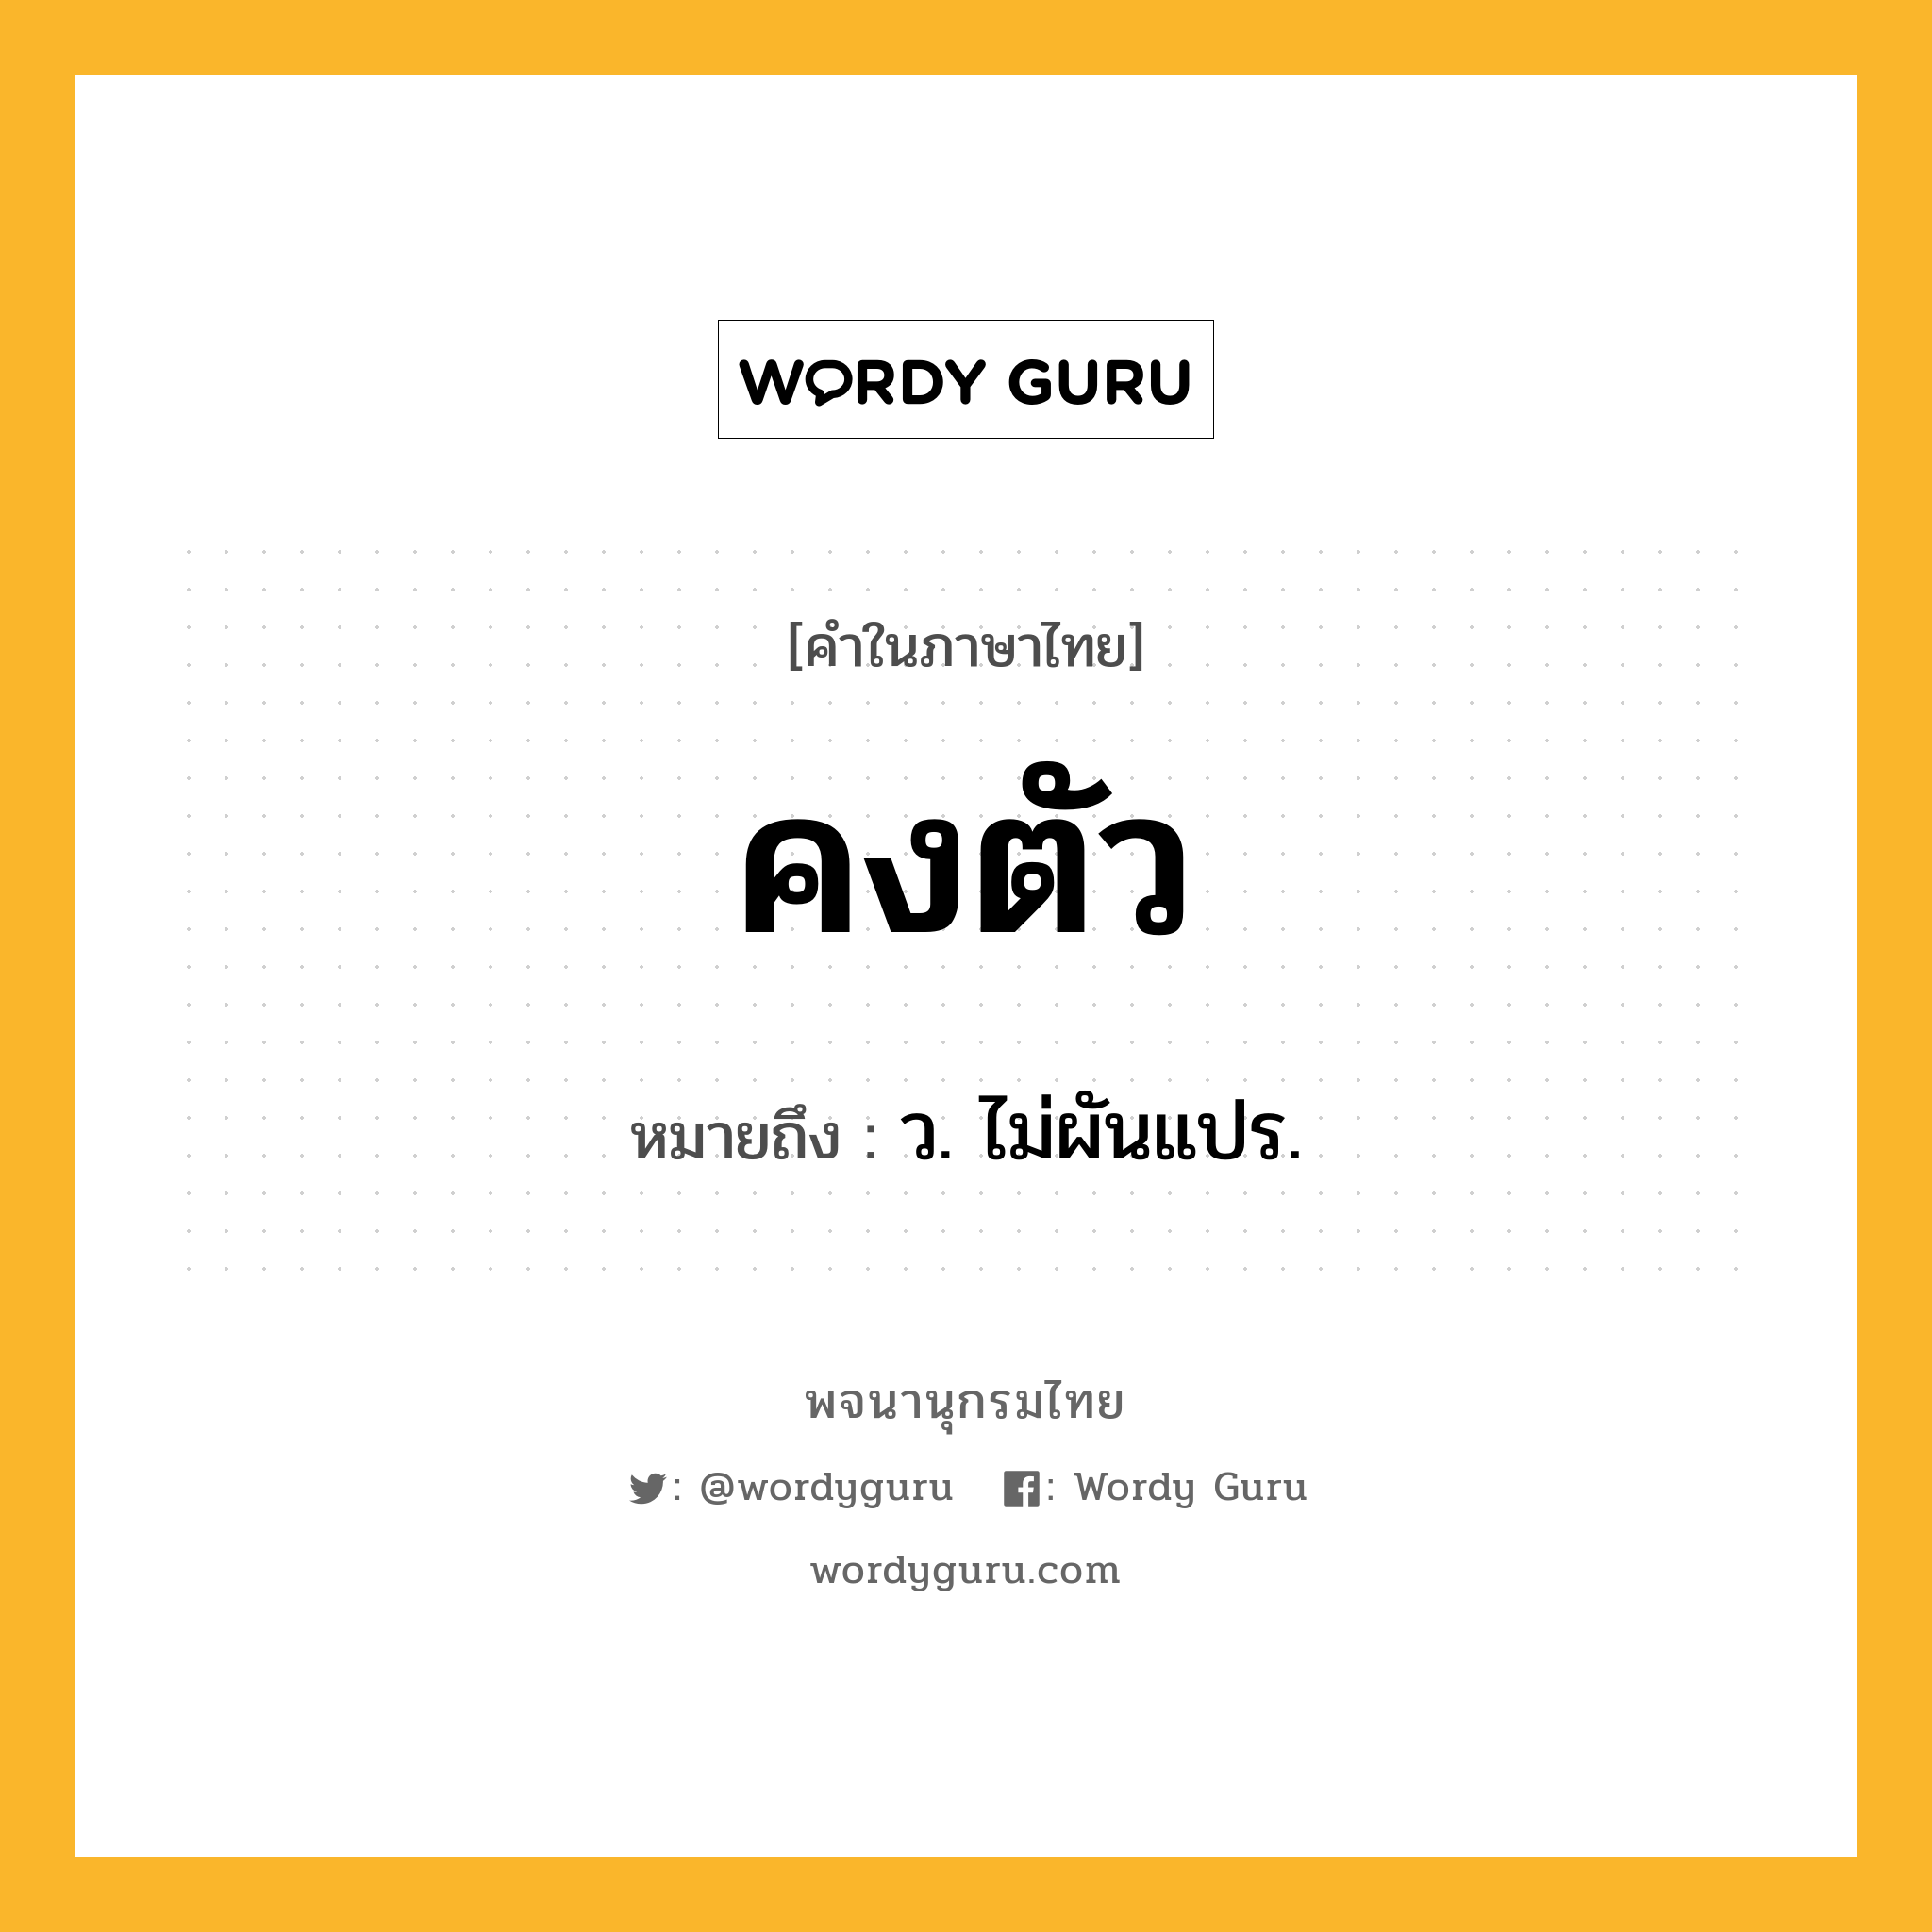 คงตัว ความหมาย หมายถึงอะไร?, คำในภาษาไทย คงตัว หมายถึง ว. ไม่ผันแปร.